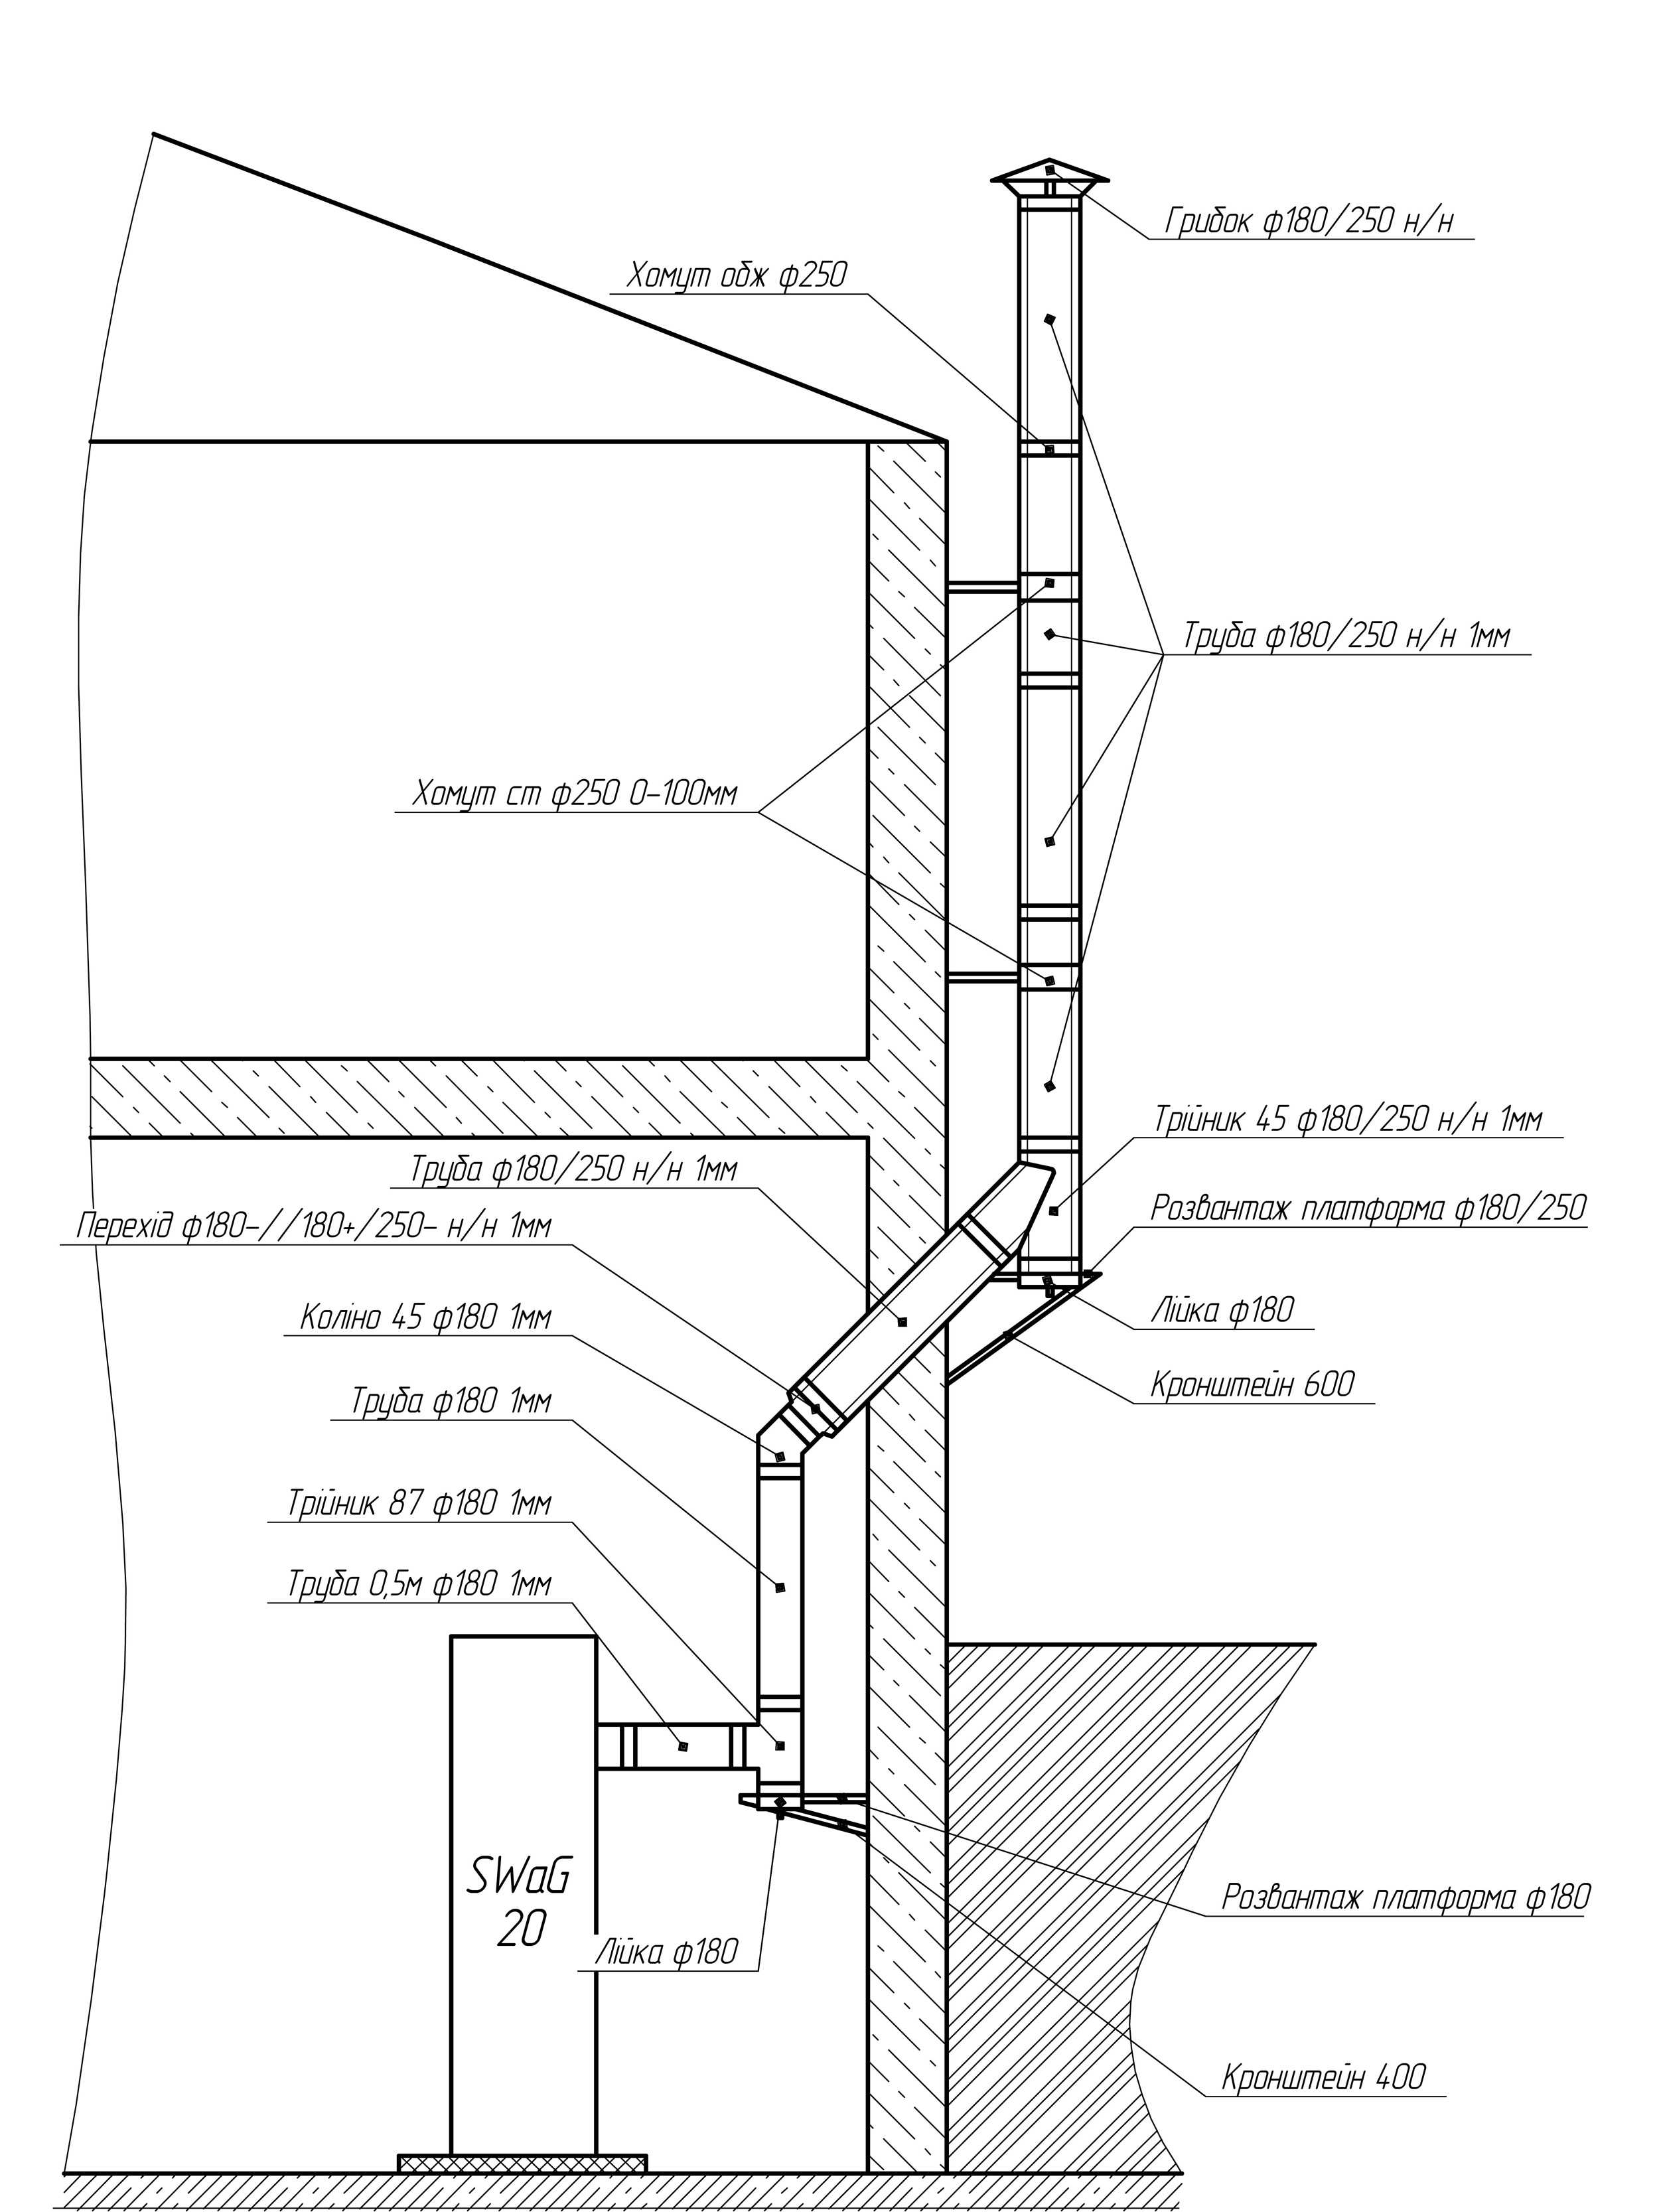 Сооружение дымохода через стену: как правильно сделать и основные правила монтажа